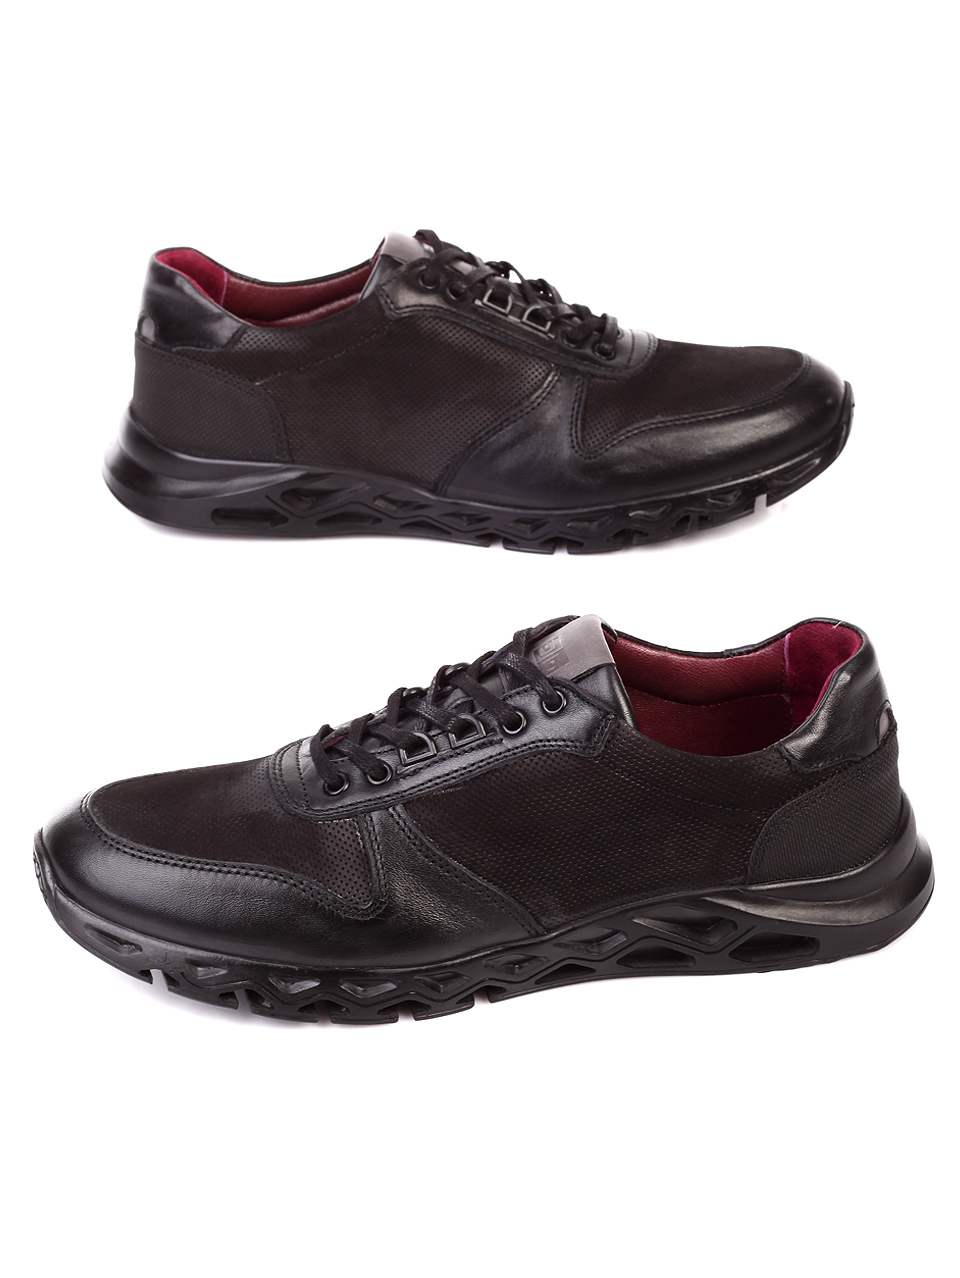 Ежедневни мъжки обувки от естествена кожа 7AT-19952 black